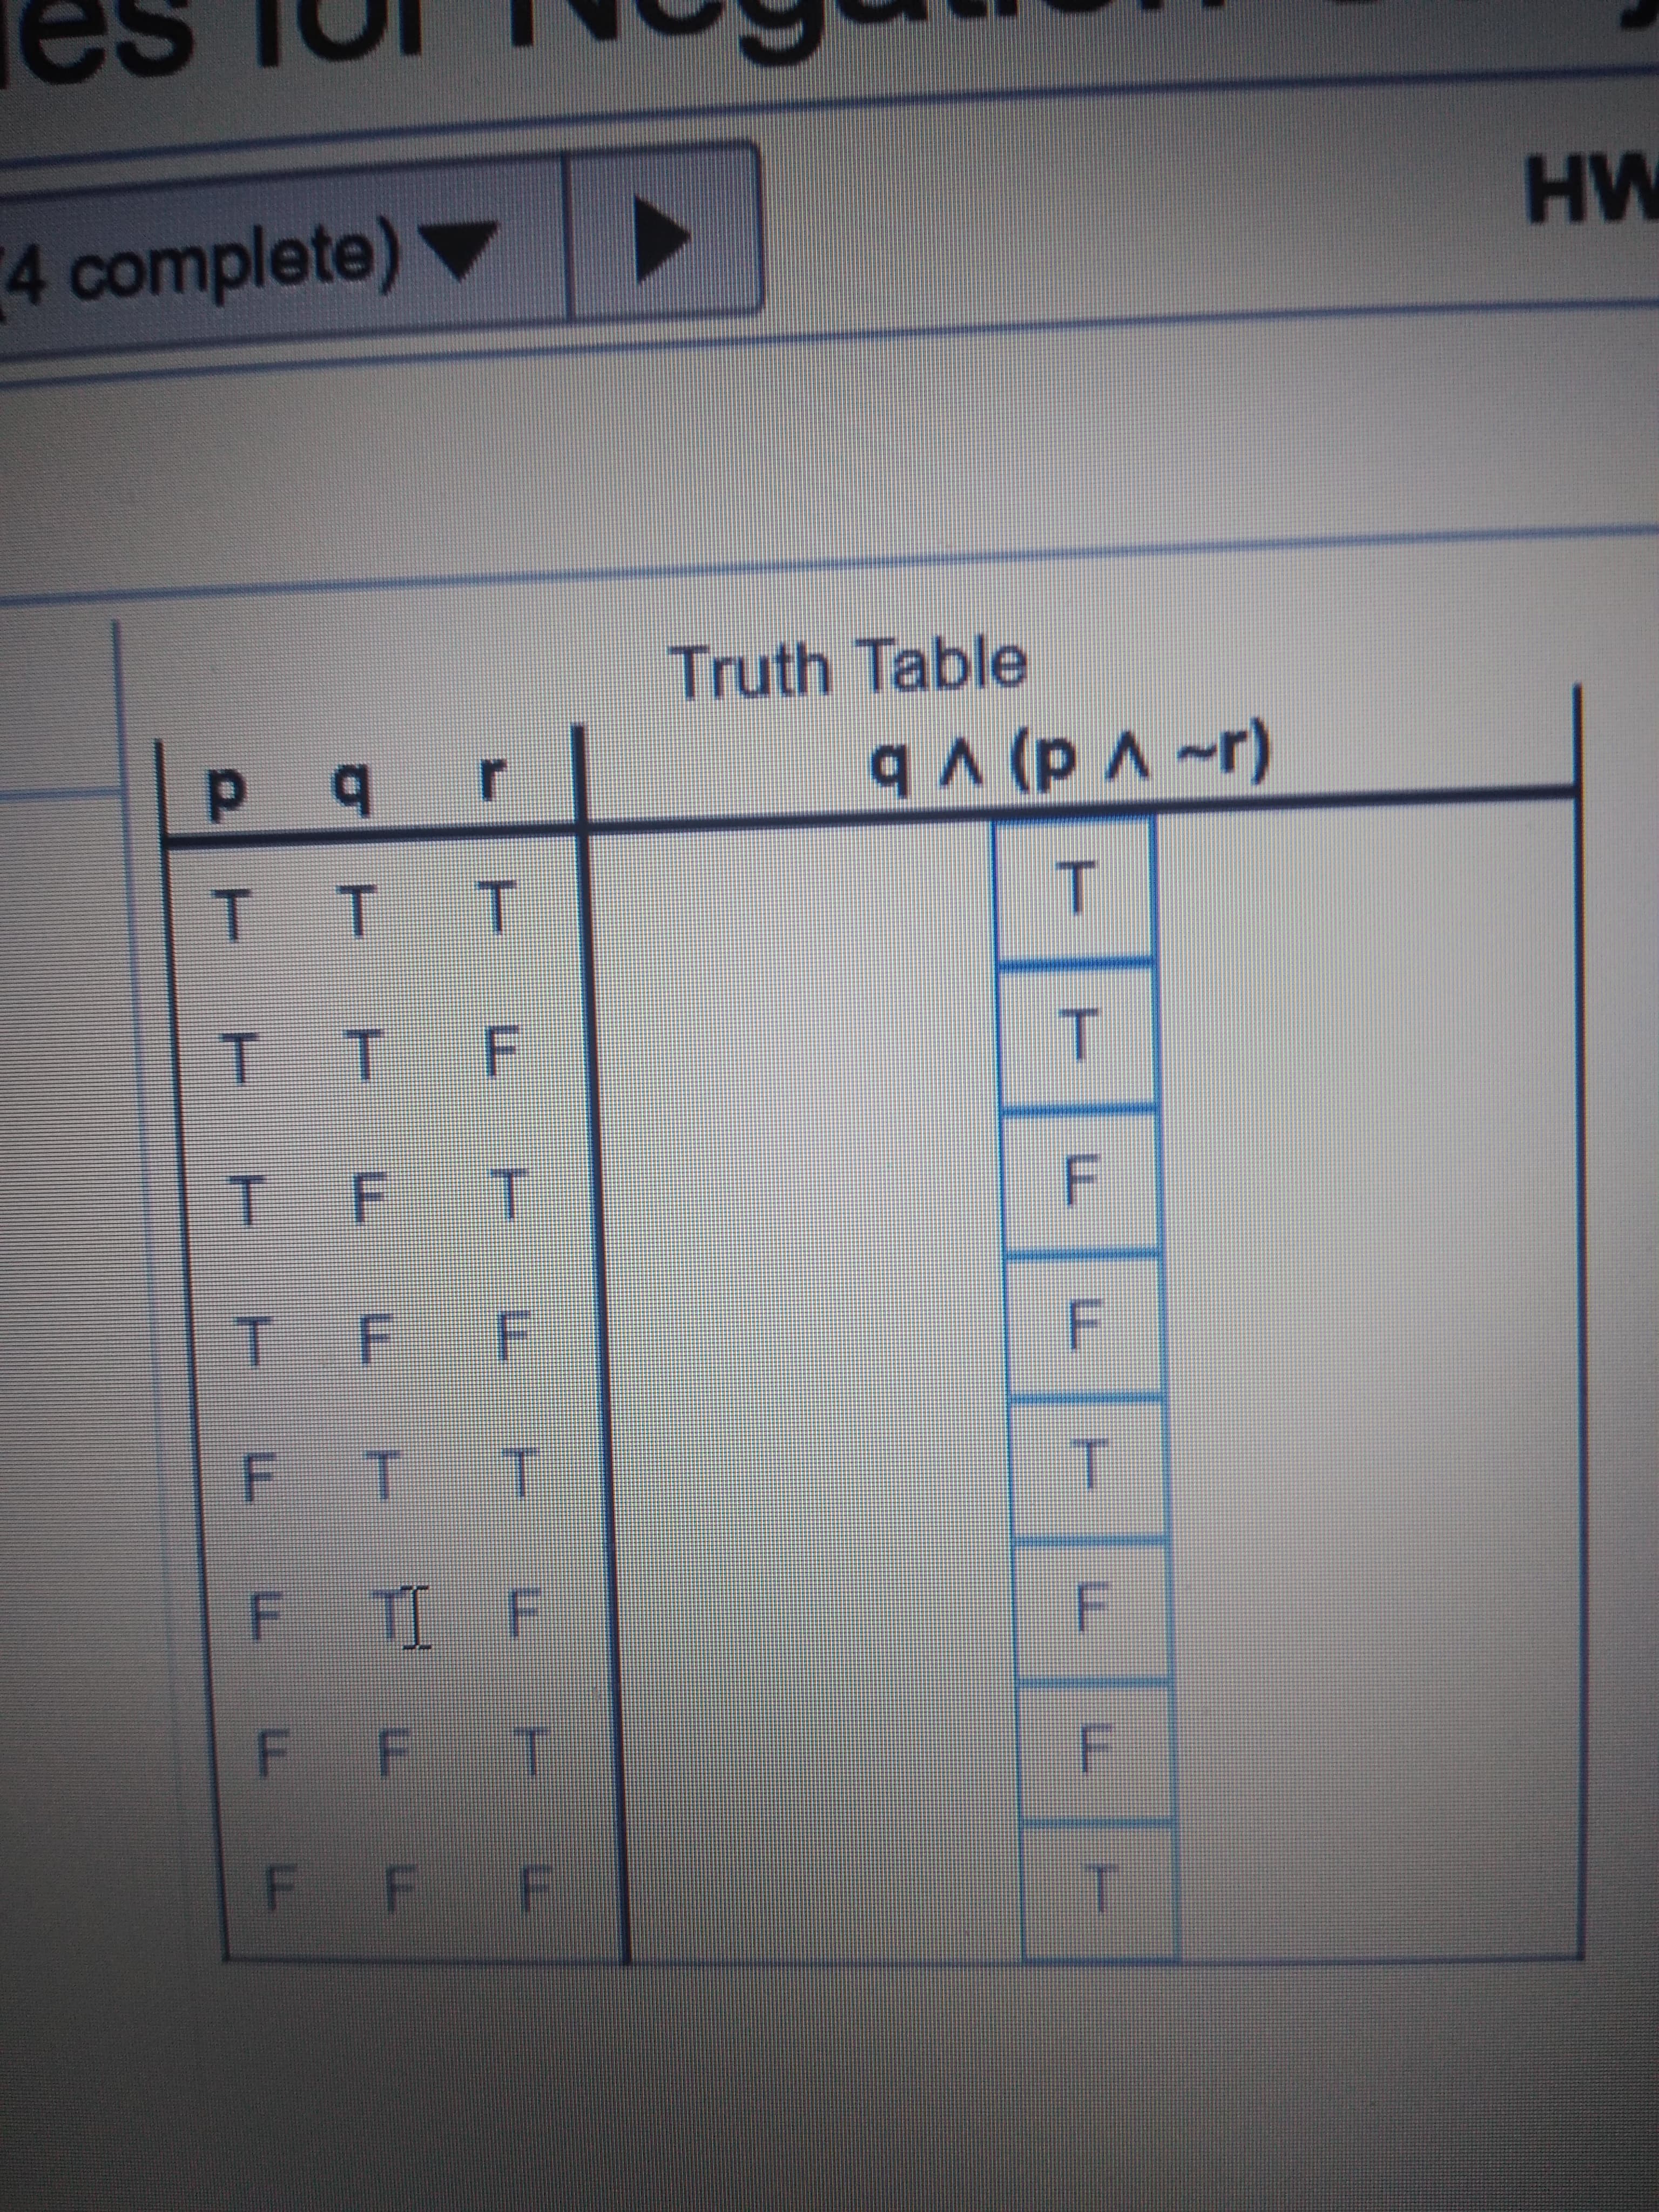 HW
4 complete) ▼
Truth Table
T.
F.
F T T
F T F
F F T
F
F F F
F.
F.
T.
